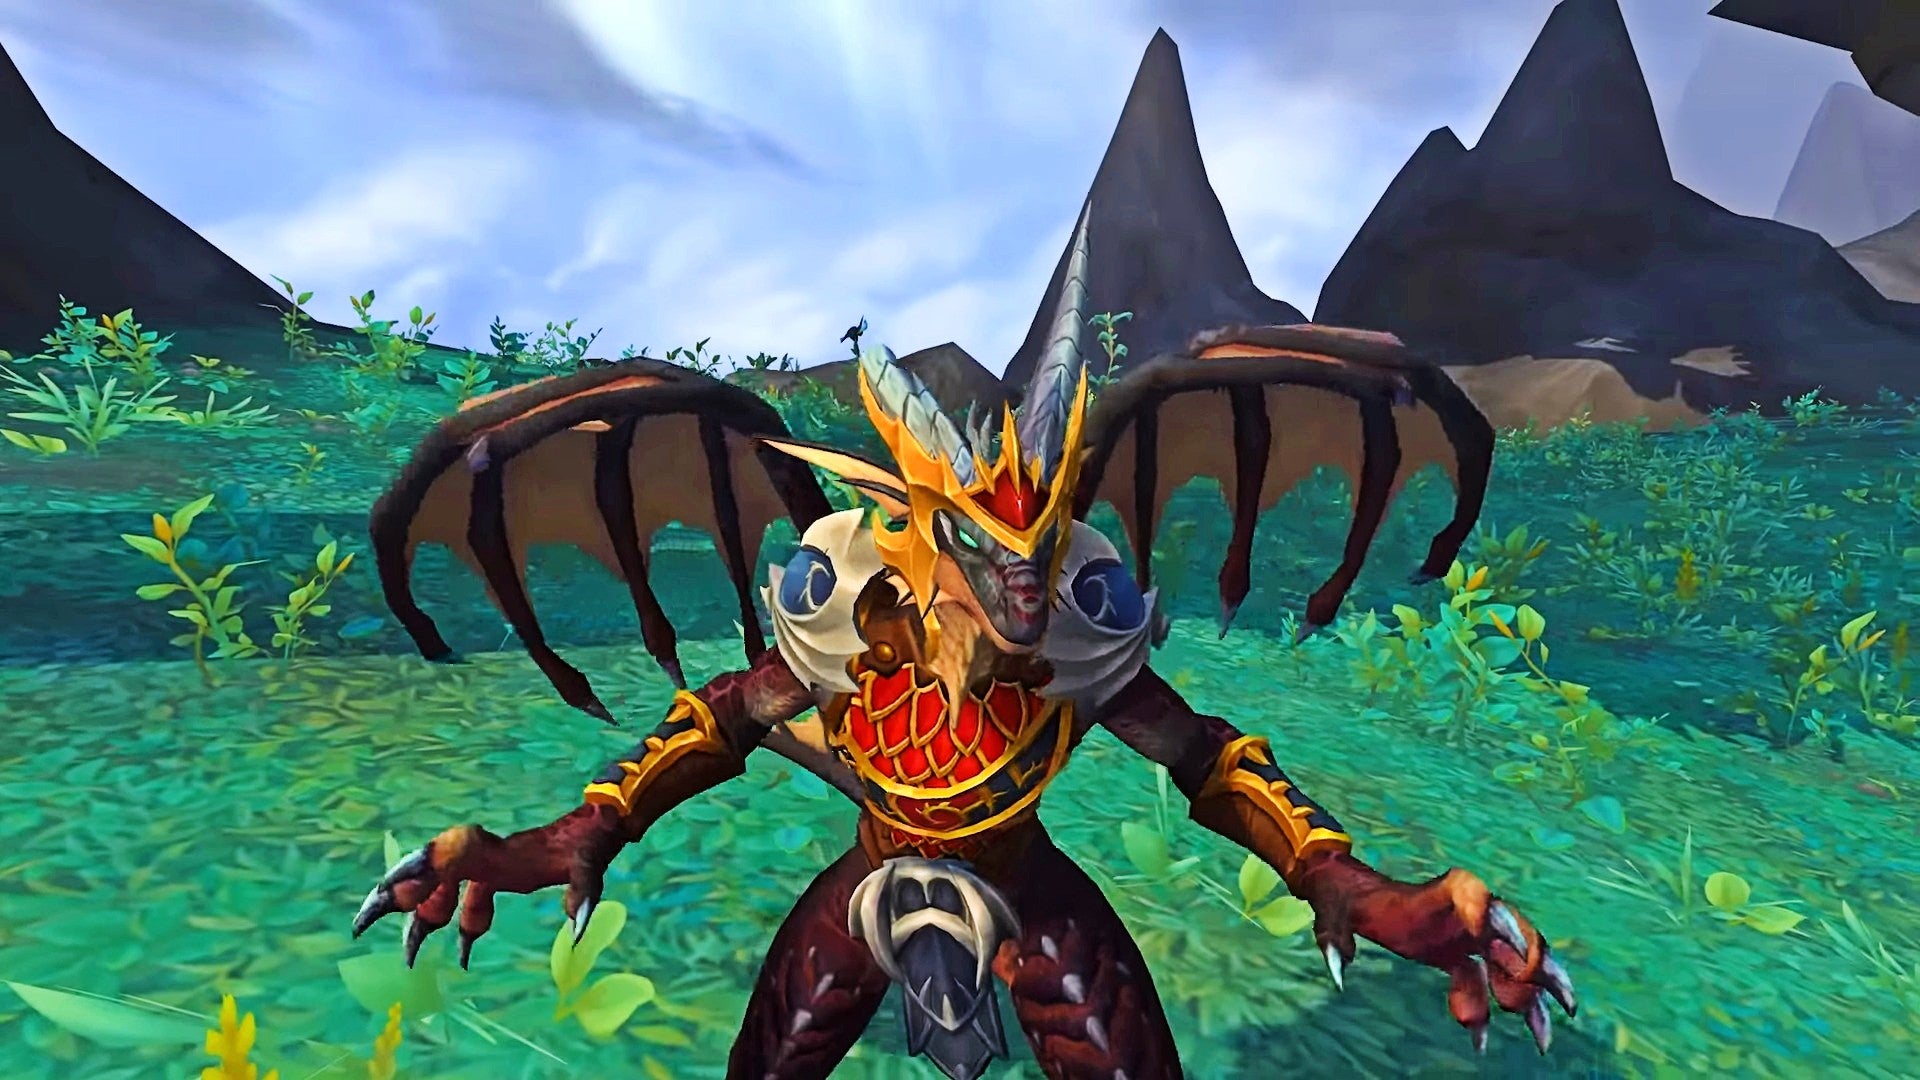 Bilder zu World of Warcraft Dragonflight: Mit dem Pre-Patch breiten die Drachen langsam ihre Flügel aus